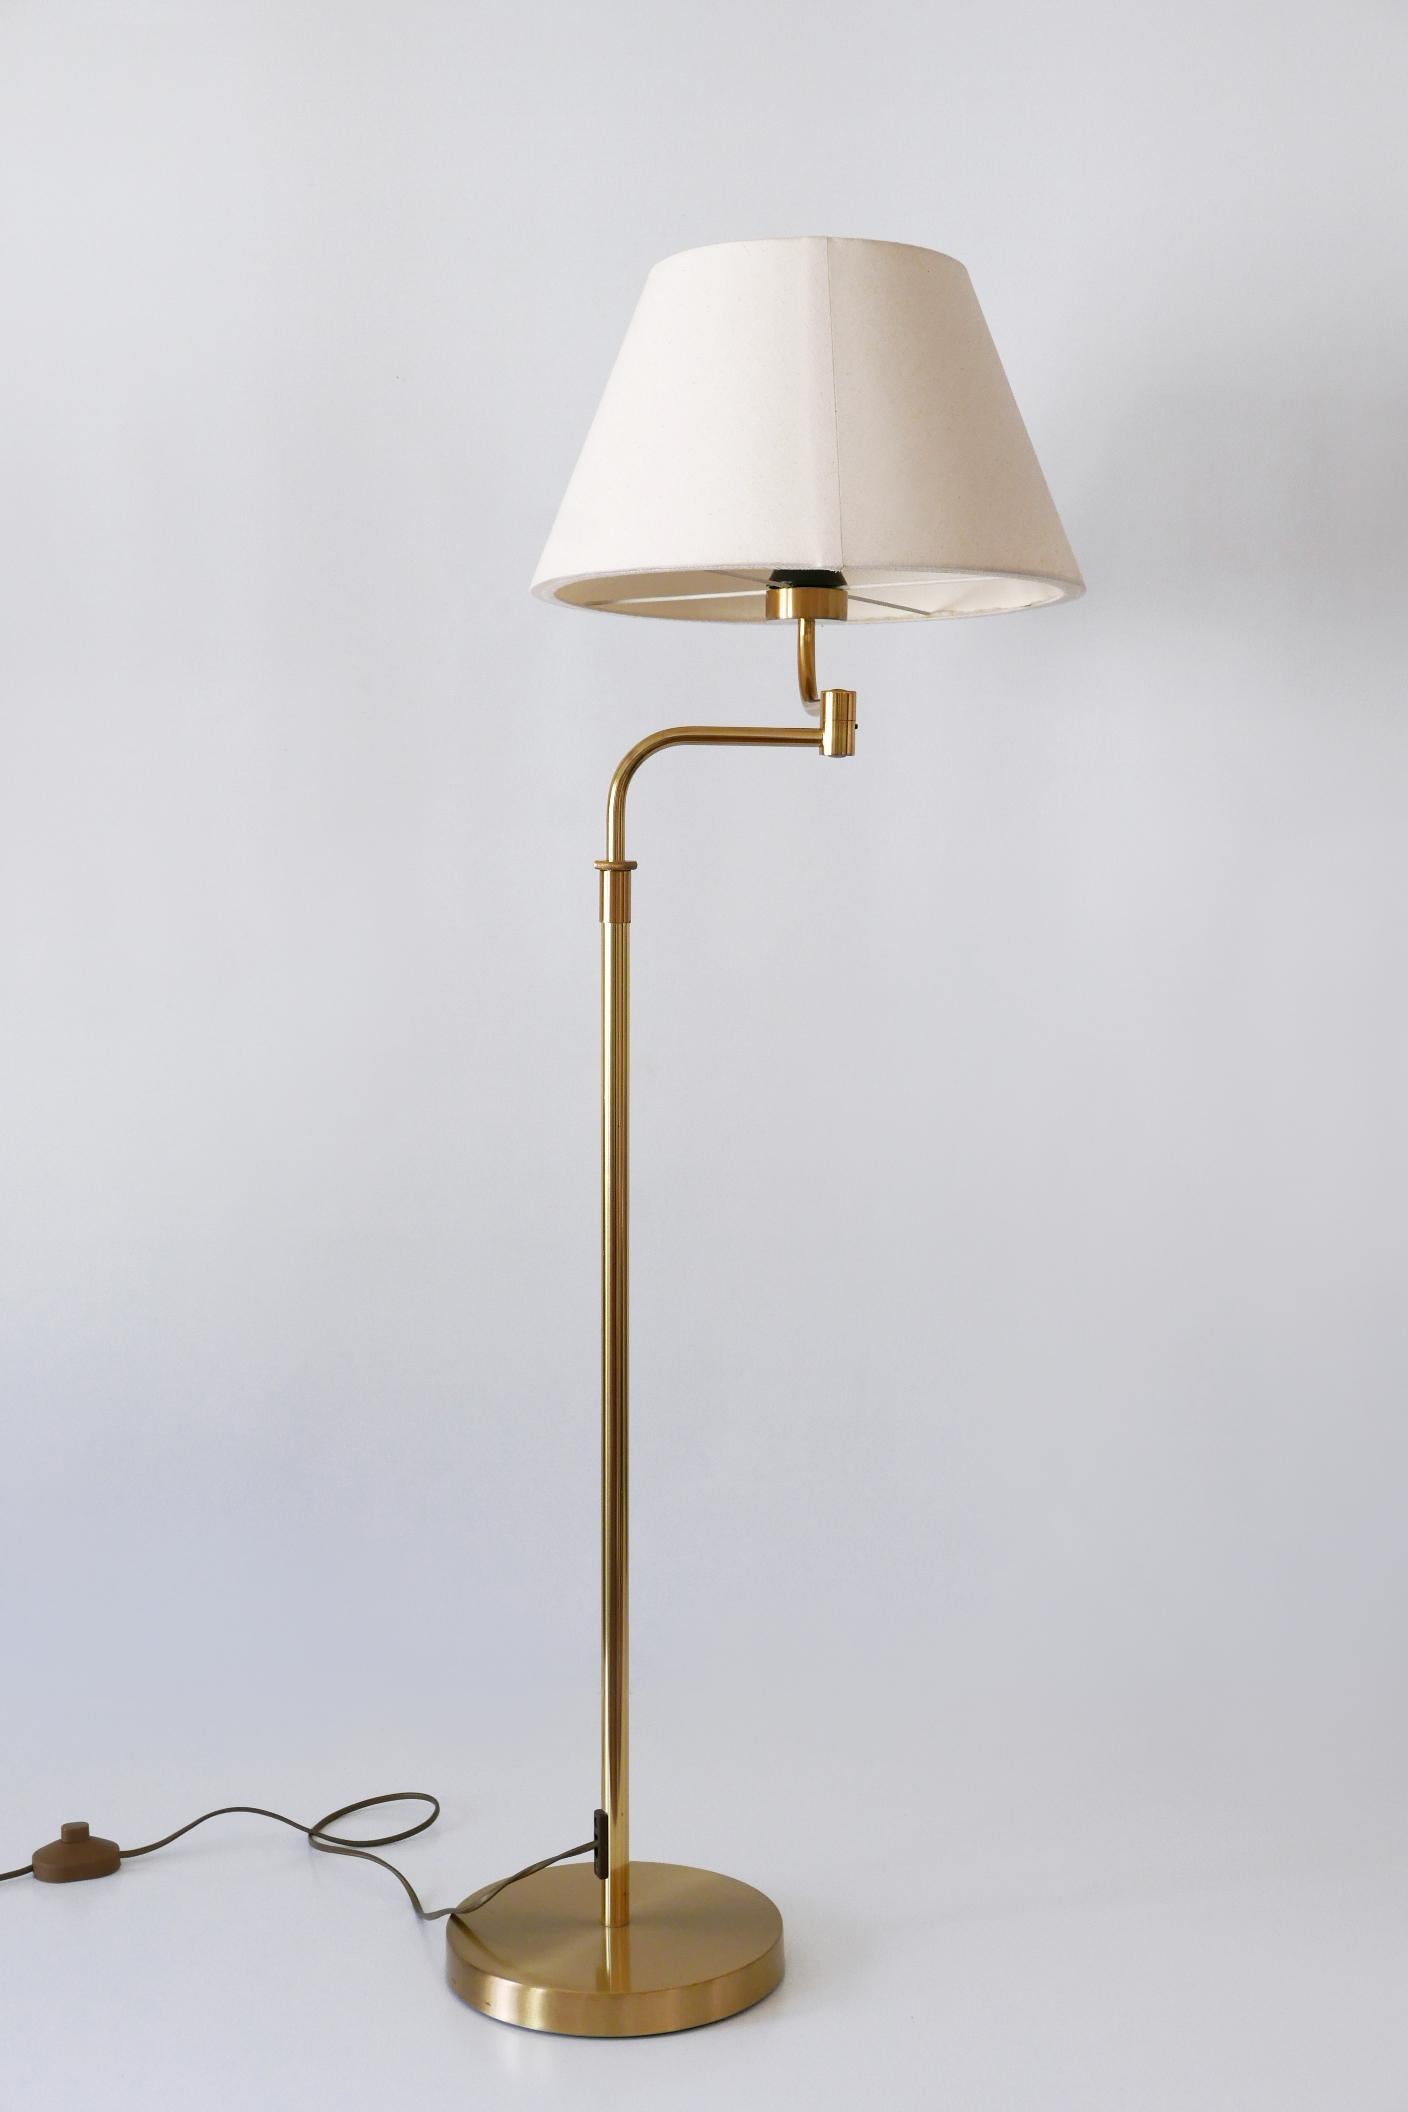 Adjustable Vintage Floor Lamp or Reading Light by Sölken Leuchten Germany 1980s For Sale 3